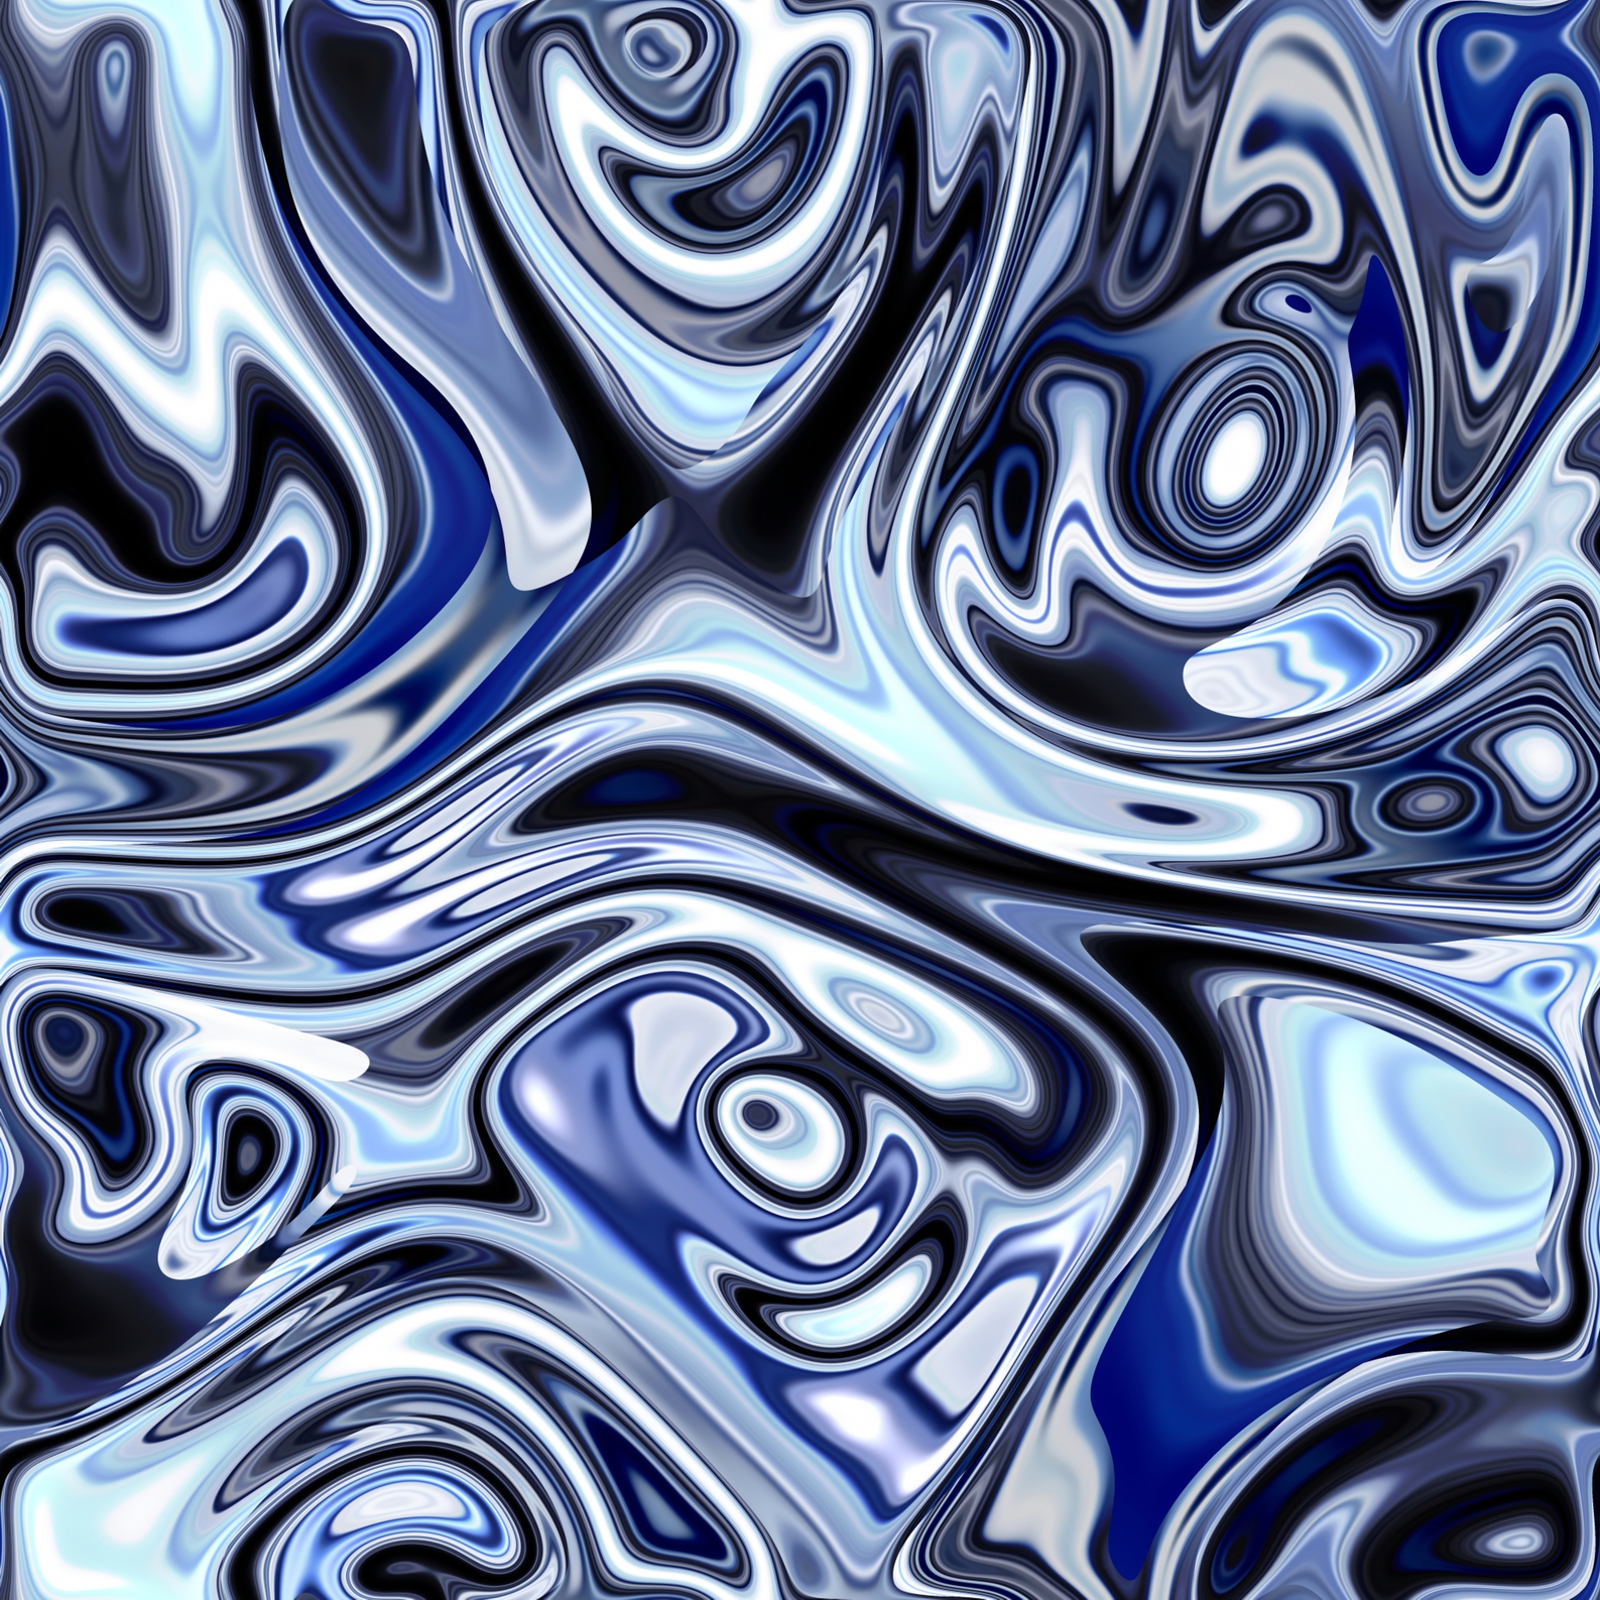 Beistelltisch Couchtisch mit Motiv Muster in blauen Wellen